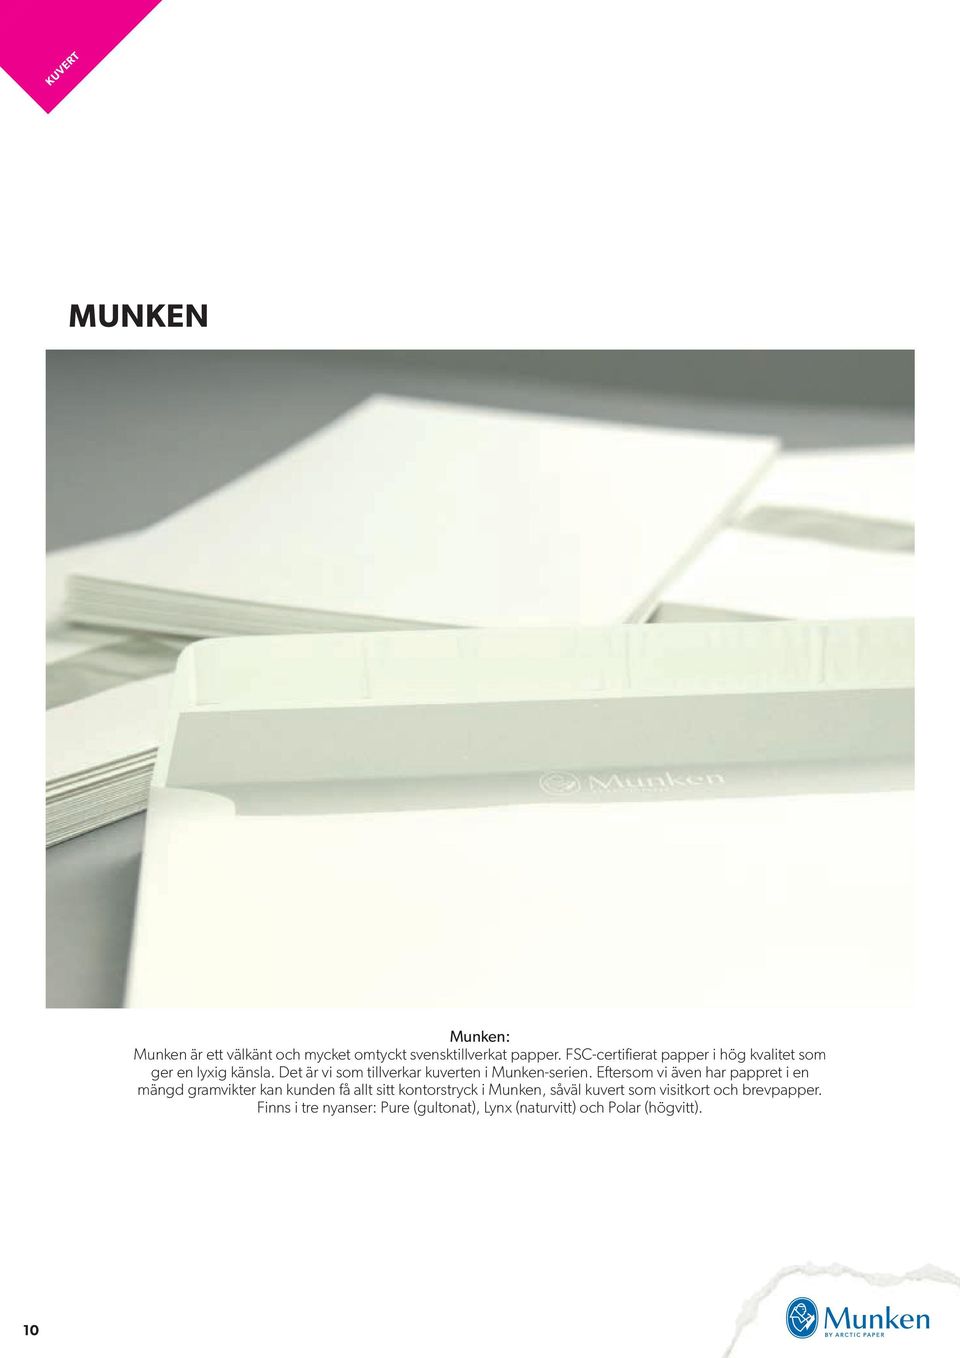 Det är vi som tillverkar kuverten i Munken-serien.